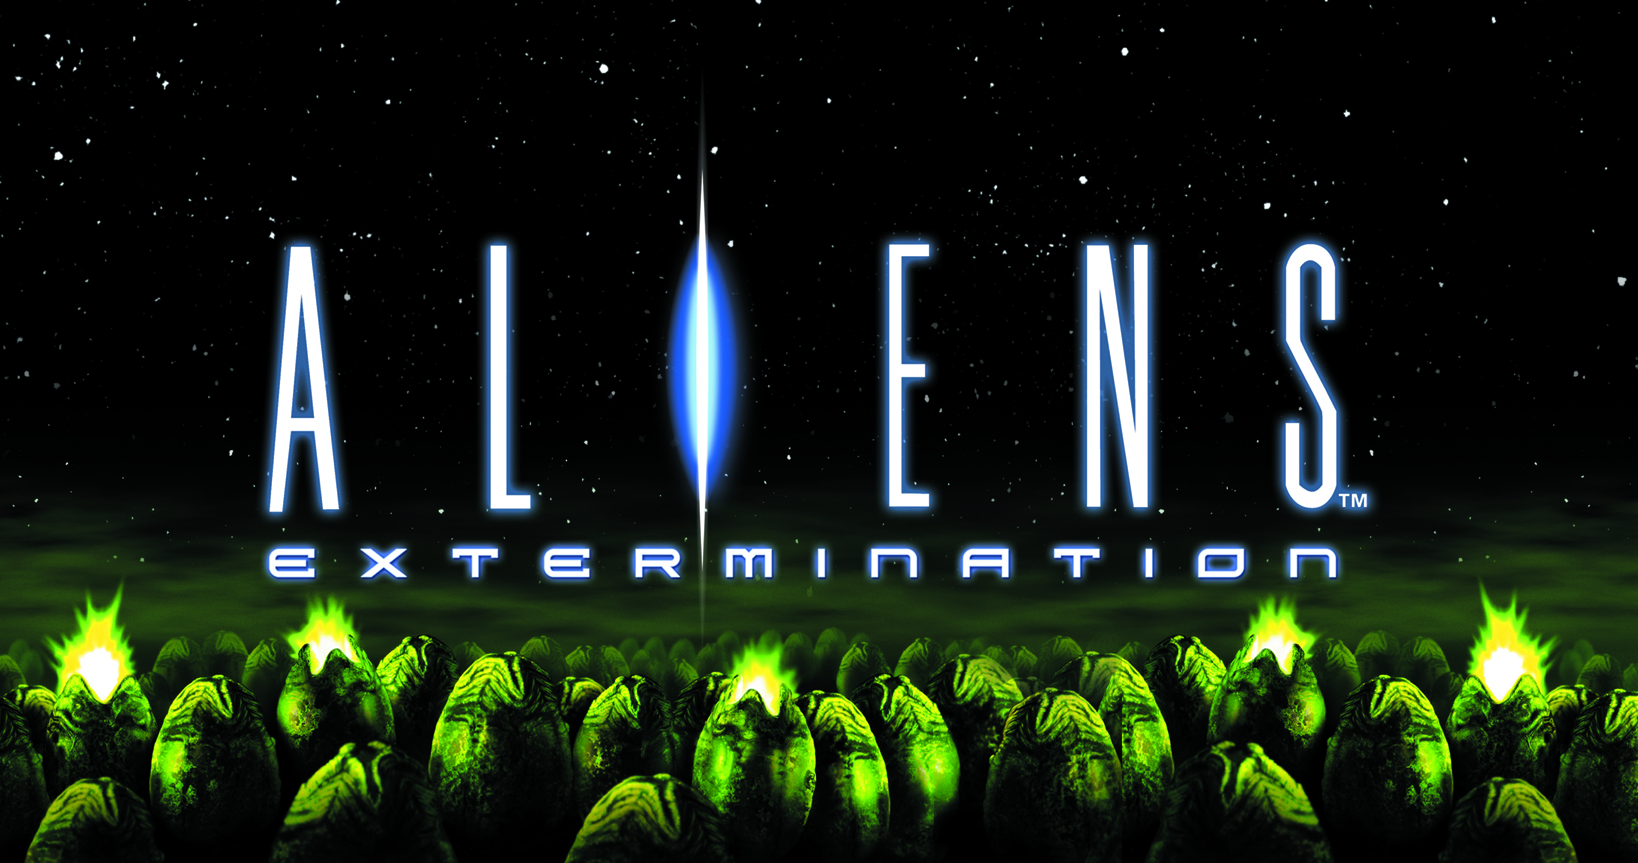 aliens extermination arcade machine